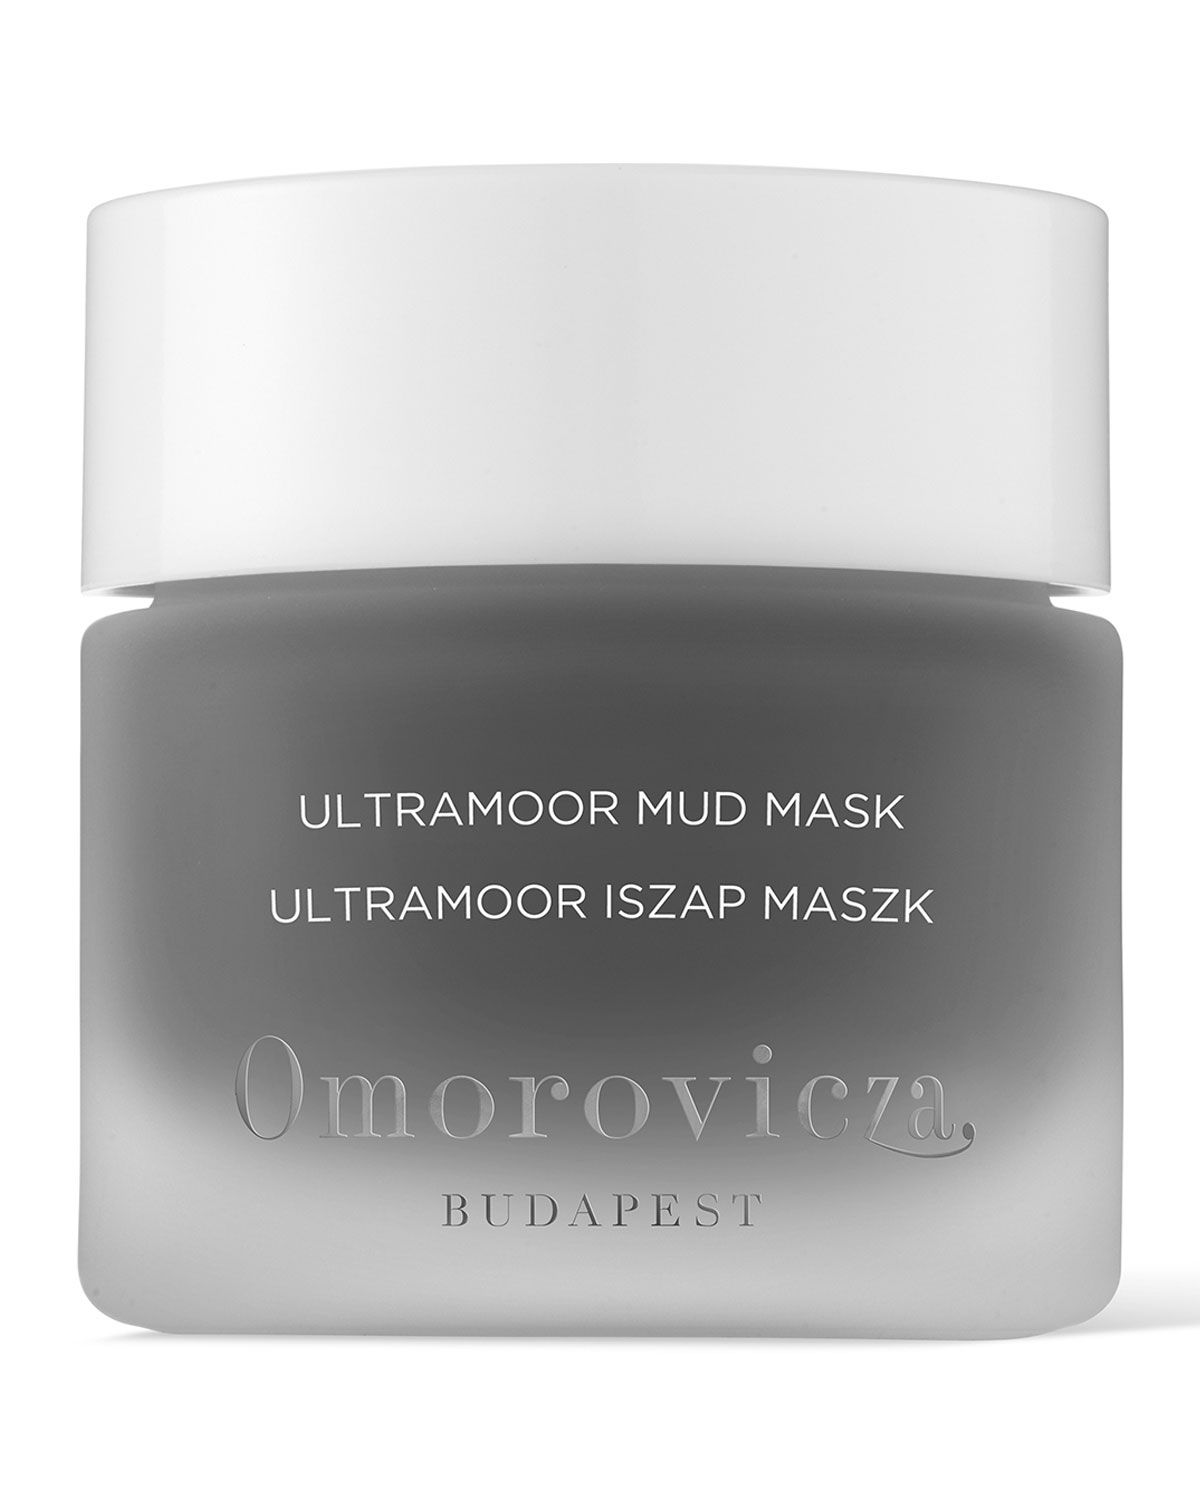 1.7 oz. Ultramoor Mud Mask | Neiman Marcus